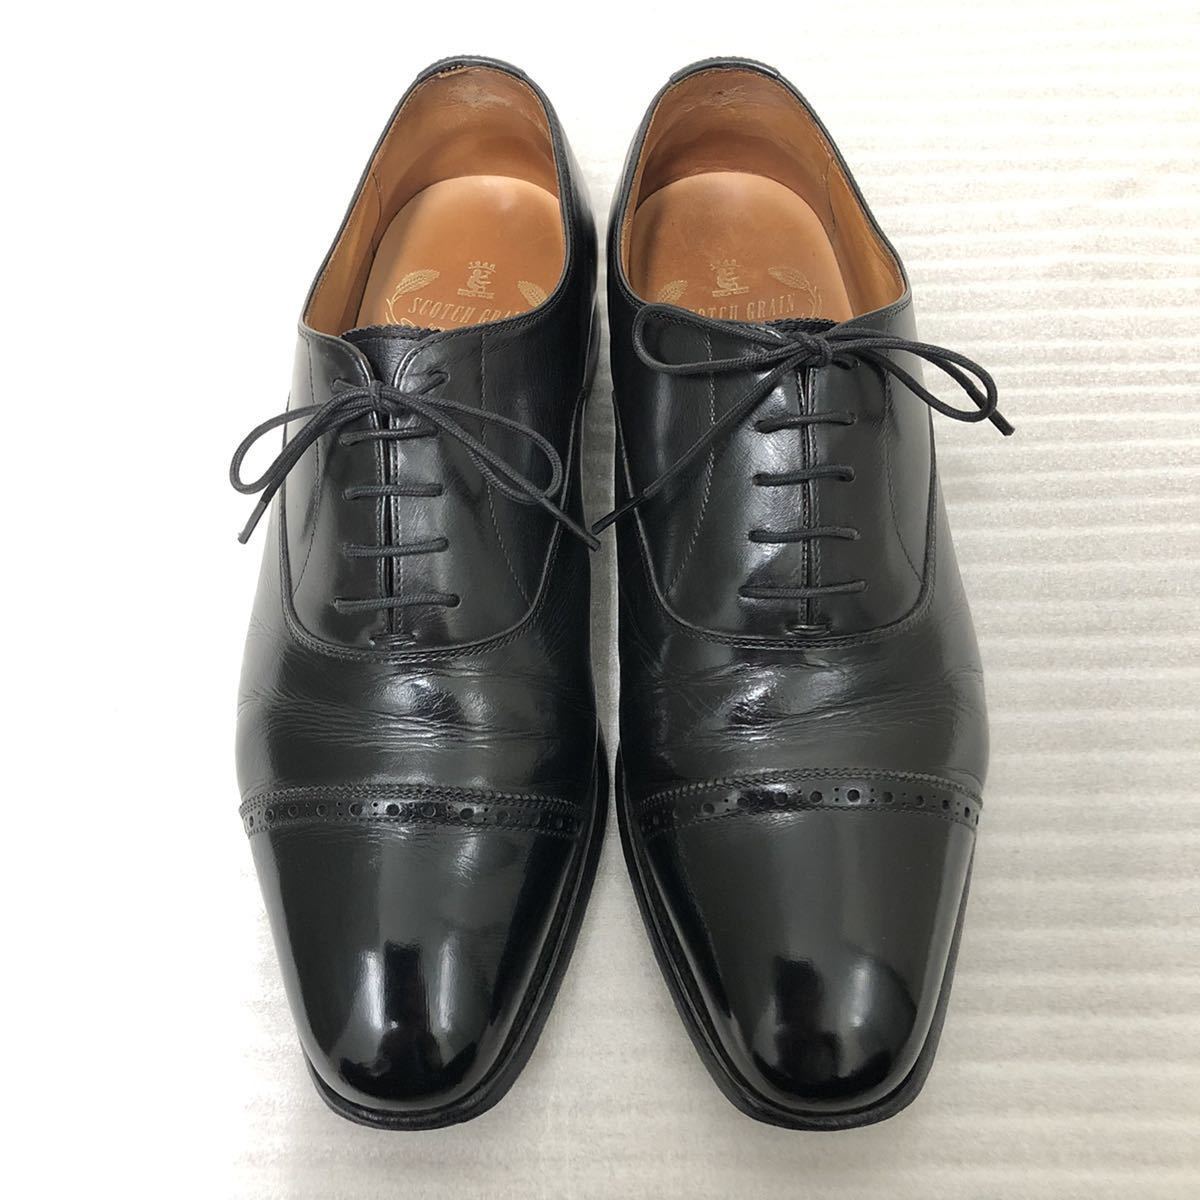 ブラック系,23.5cm以下特売 ◾️SCOTCH GRAIN ◾️スコッチグレイン940 サイズ23.5 EEE 黒 ドレス/ビジネス 靴ブラック系 23.5cm以下￥7,574-www.laeknavaktin.is